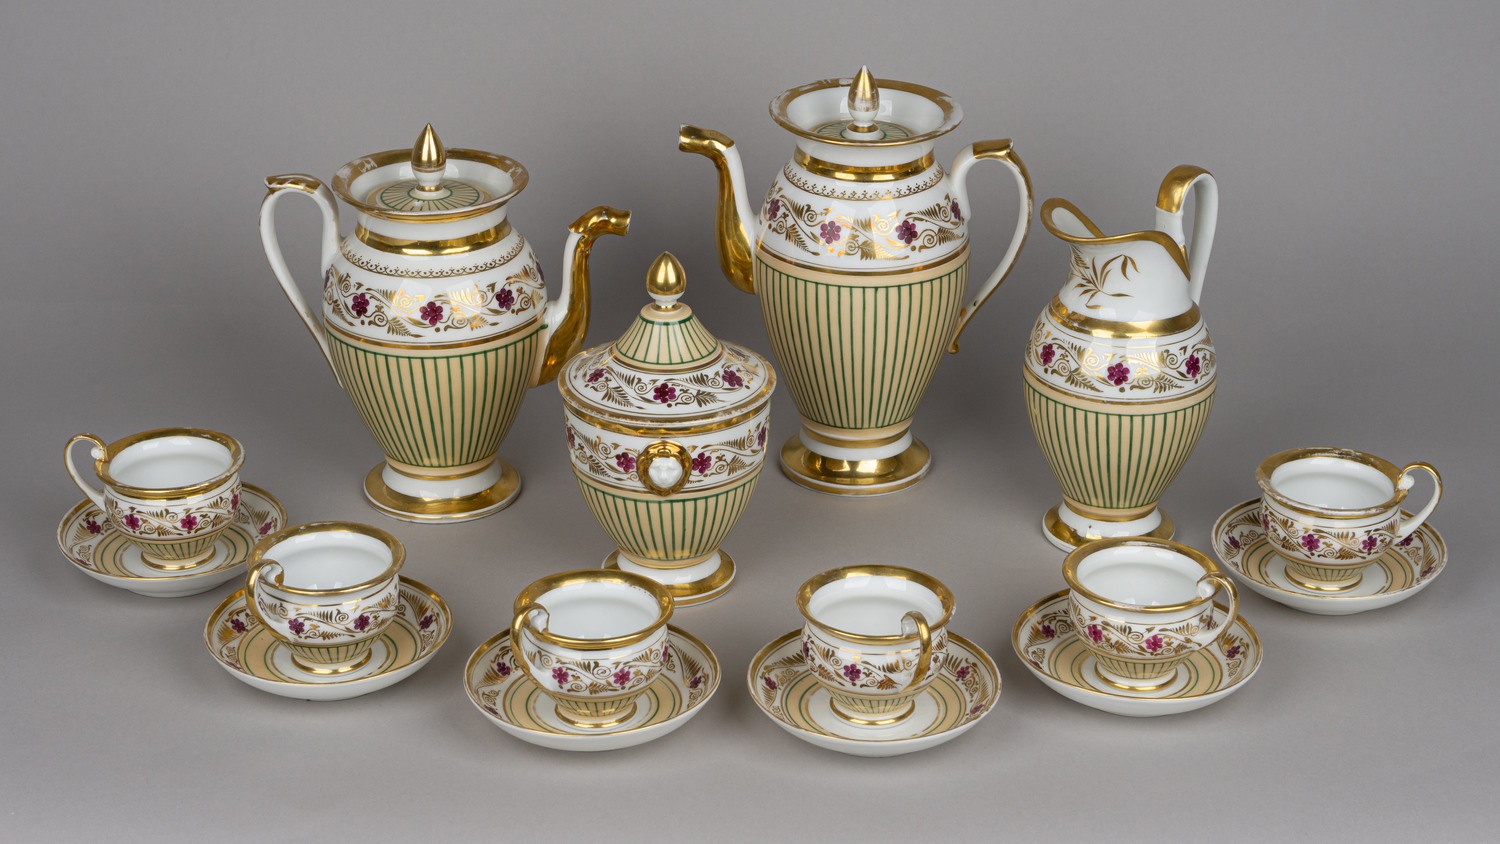 Сервиз чайно-кофейный на шесть персон в стиле ампир: кофейник, чайник, сахарница, молочник, шесть чайных пар.<br>Западная Европа, первая треть XIX века.